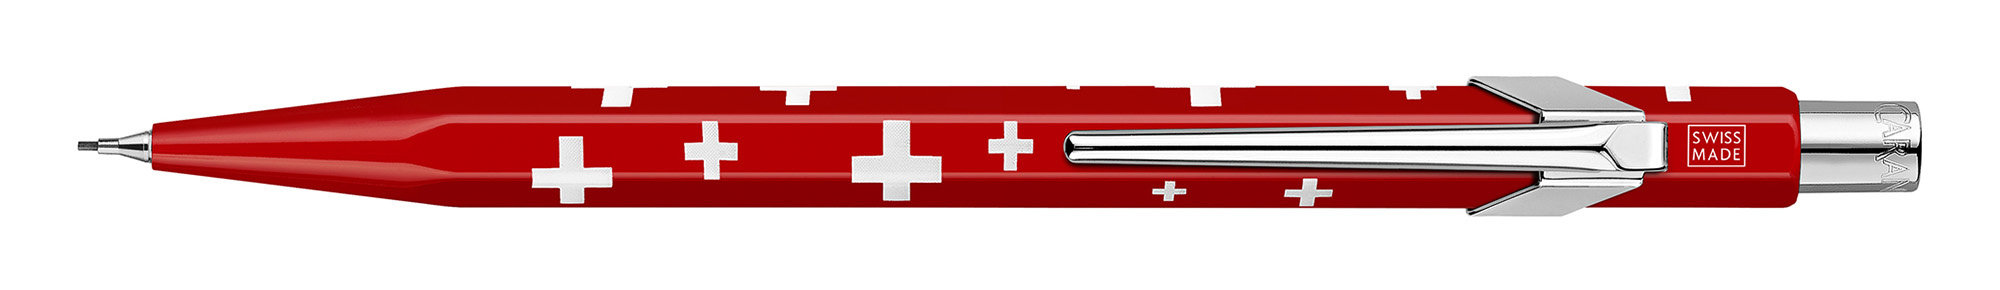 Карандаш механический 0.7мм, алюминий, красный, Carandache Office 844 Totally Swiss (844.253)